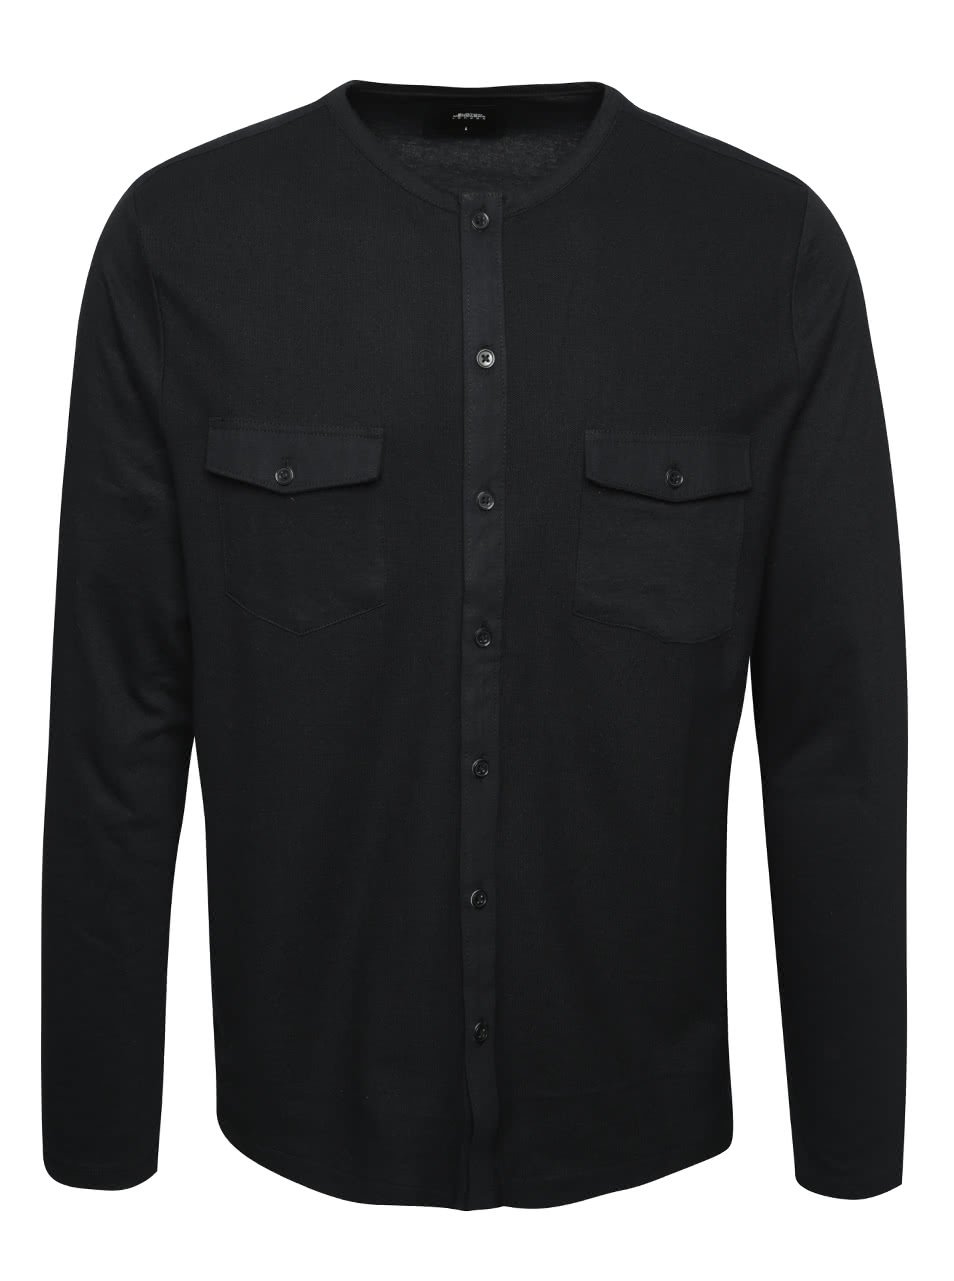 Černá košile bez límečku s náprsními kapsami Burton Menswear London